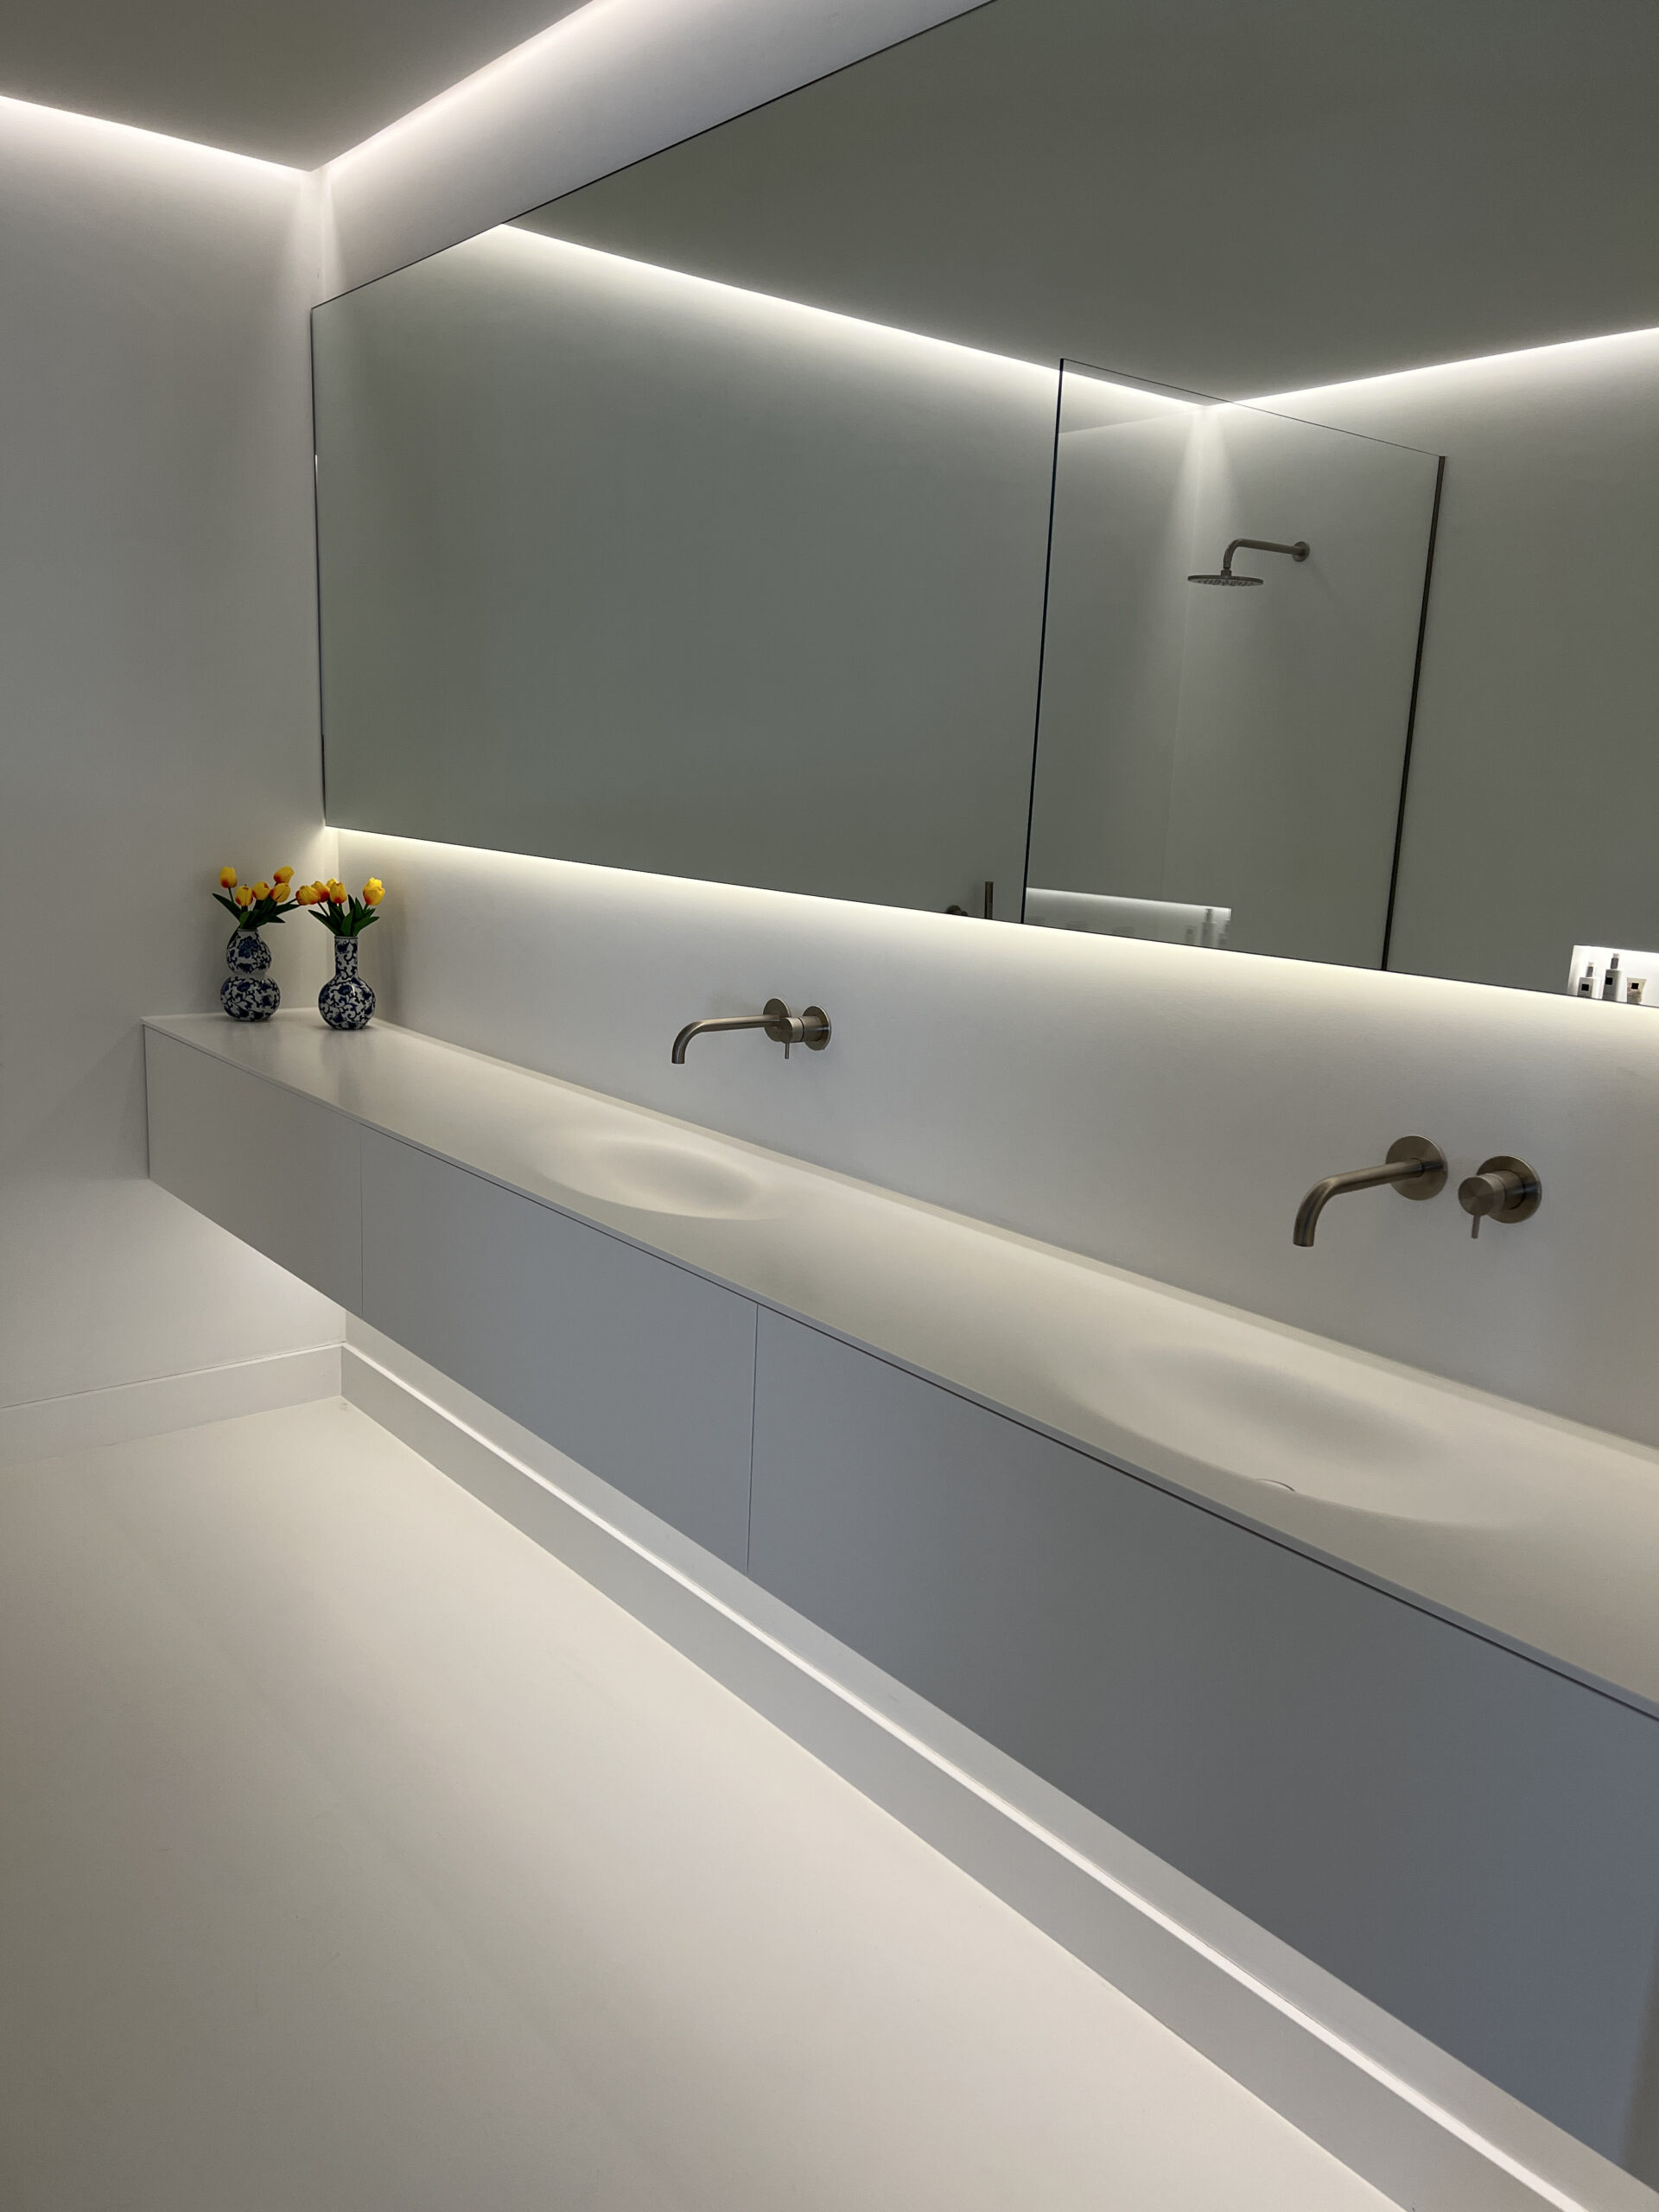 Een witte badkamer met een wit badkamermeubel en een dubbele wastafel waarboven 2 kranen hangen en een grote rechthoekige spiegel met LED verlichting. Op het badkamermeubel staan twee delfstblauwe vaasjes met in ieder een gele bloem